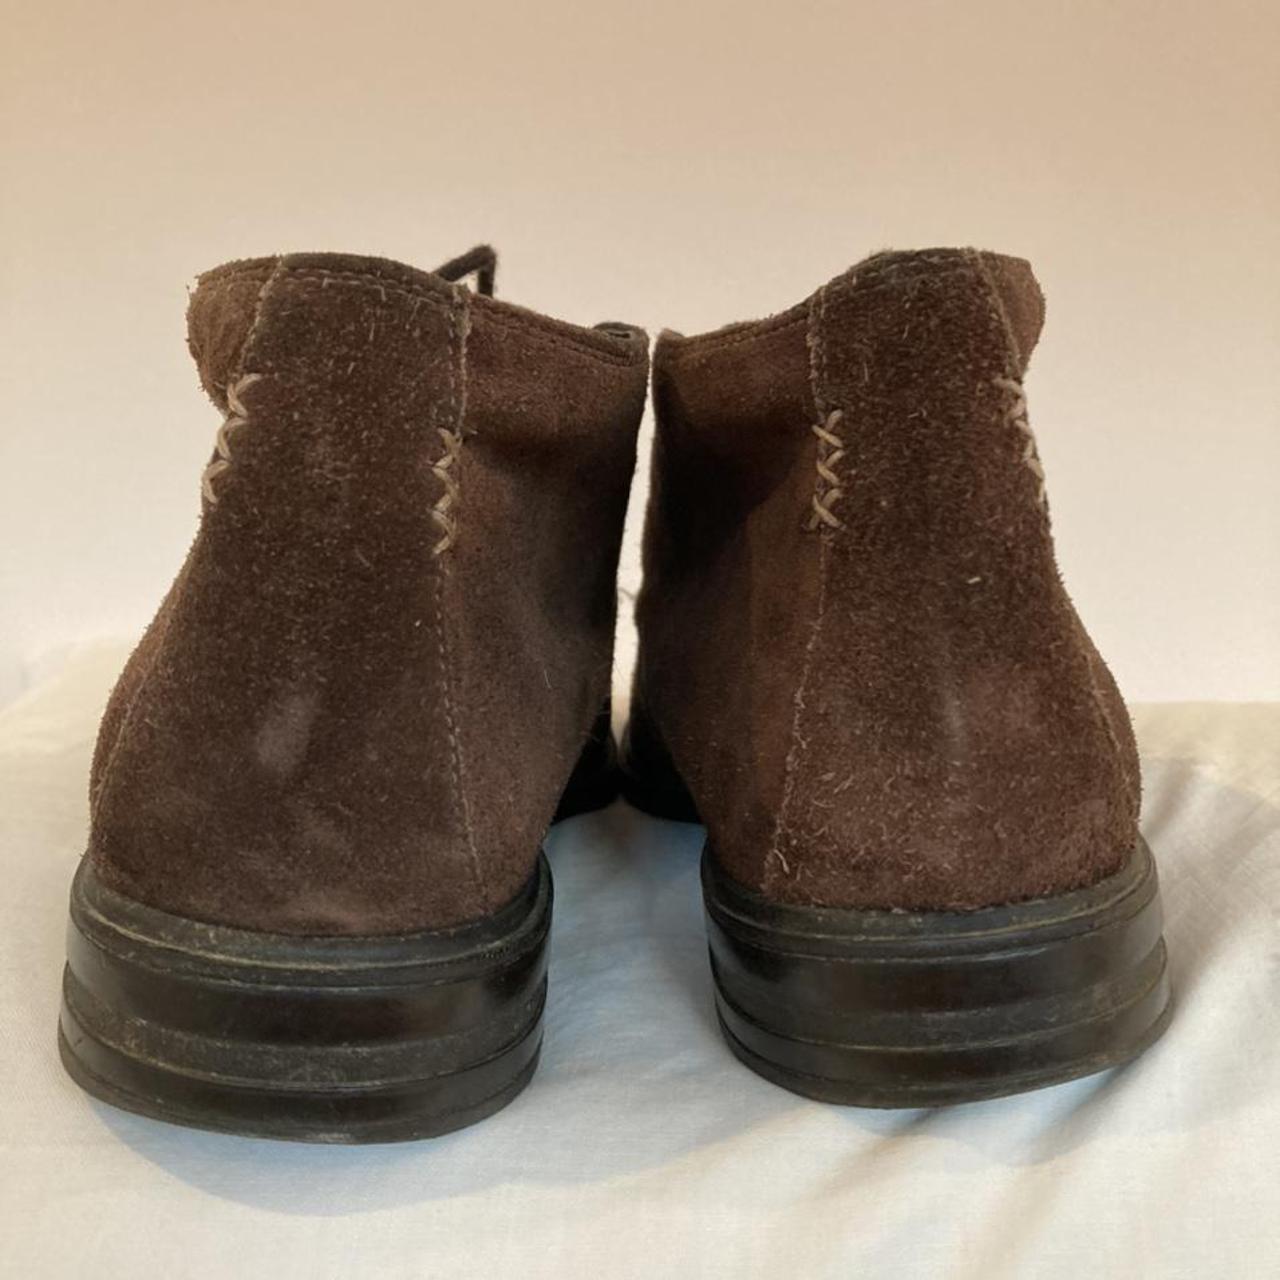 Clarks Men's Brown Boots (3)